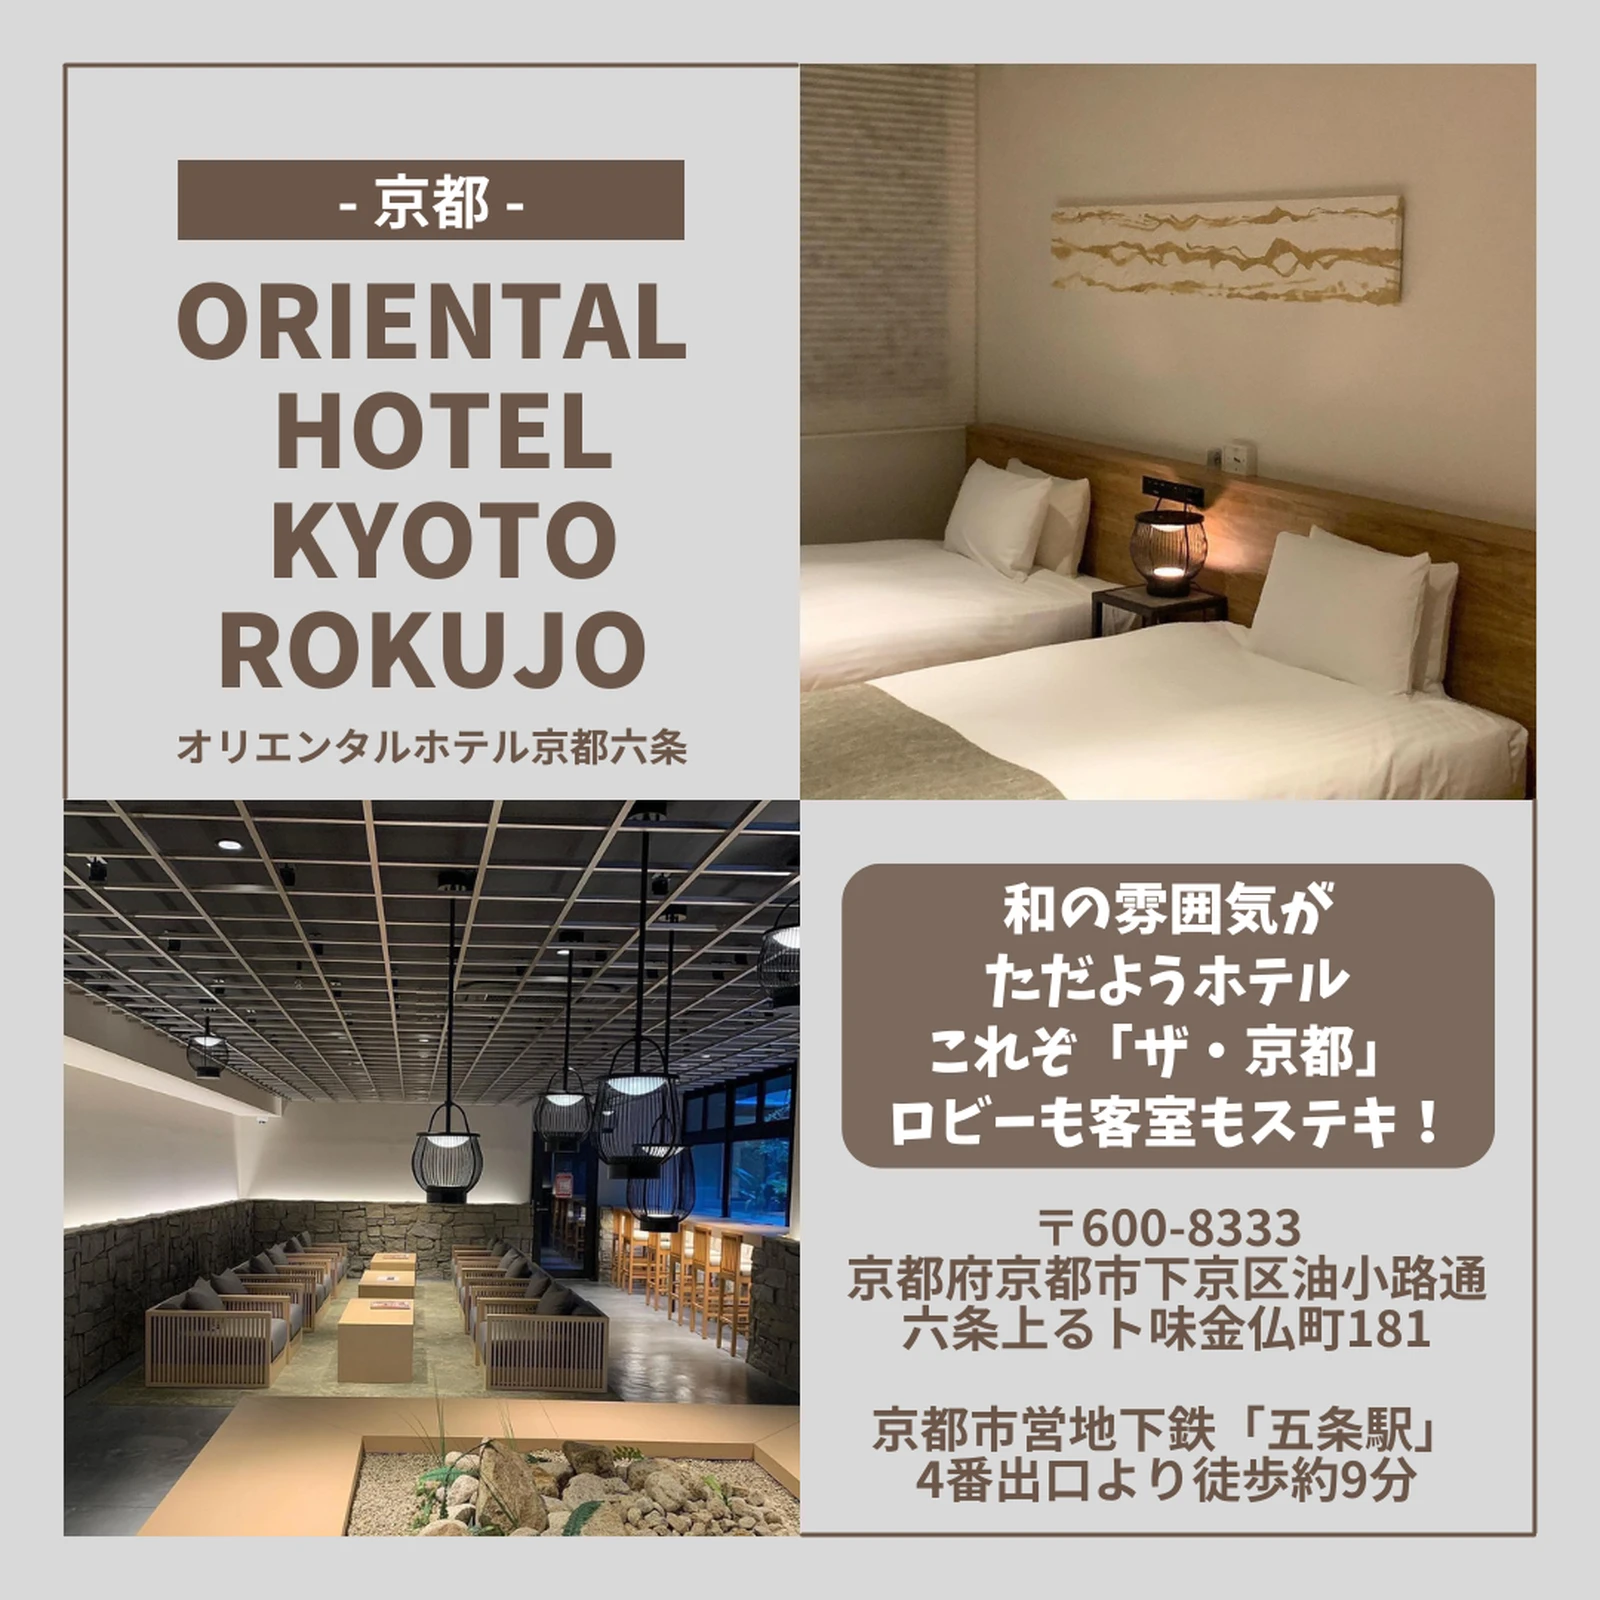 京都 おしゃれホテル5選 ミタイトラベルが投稿したフォトブック Lemon8